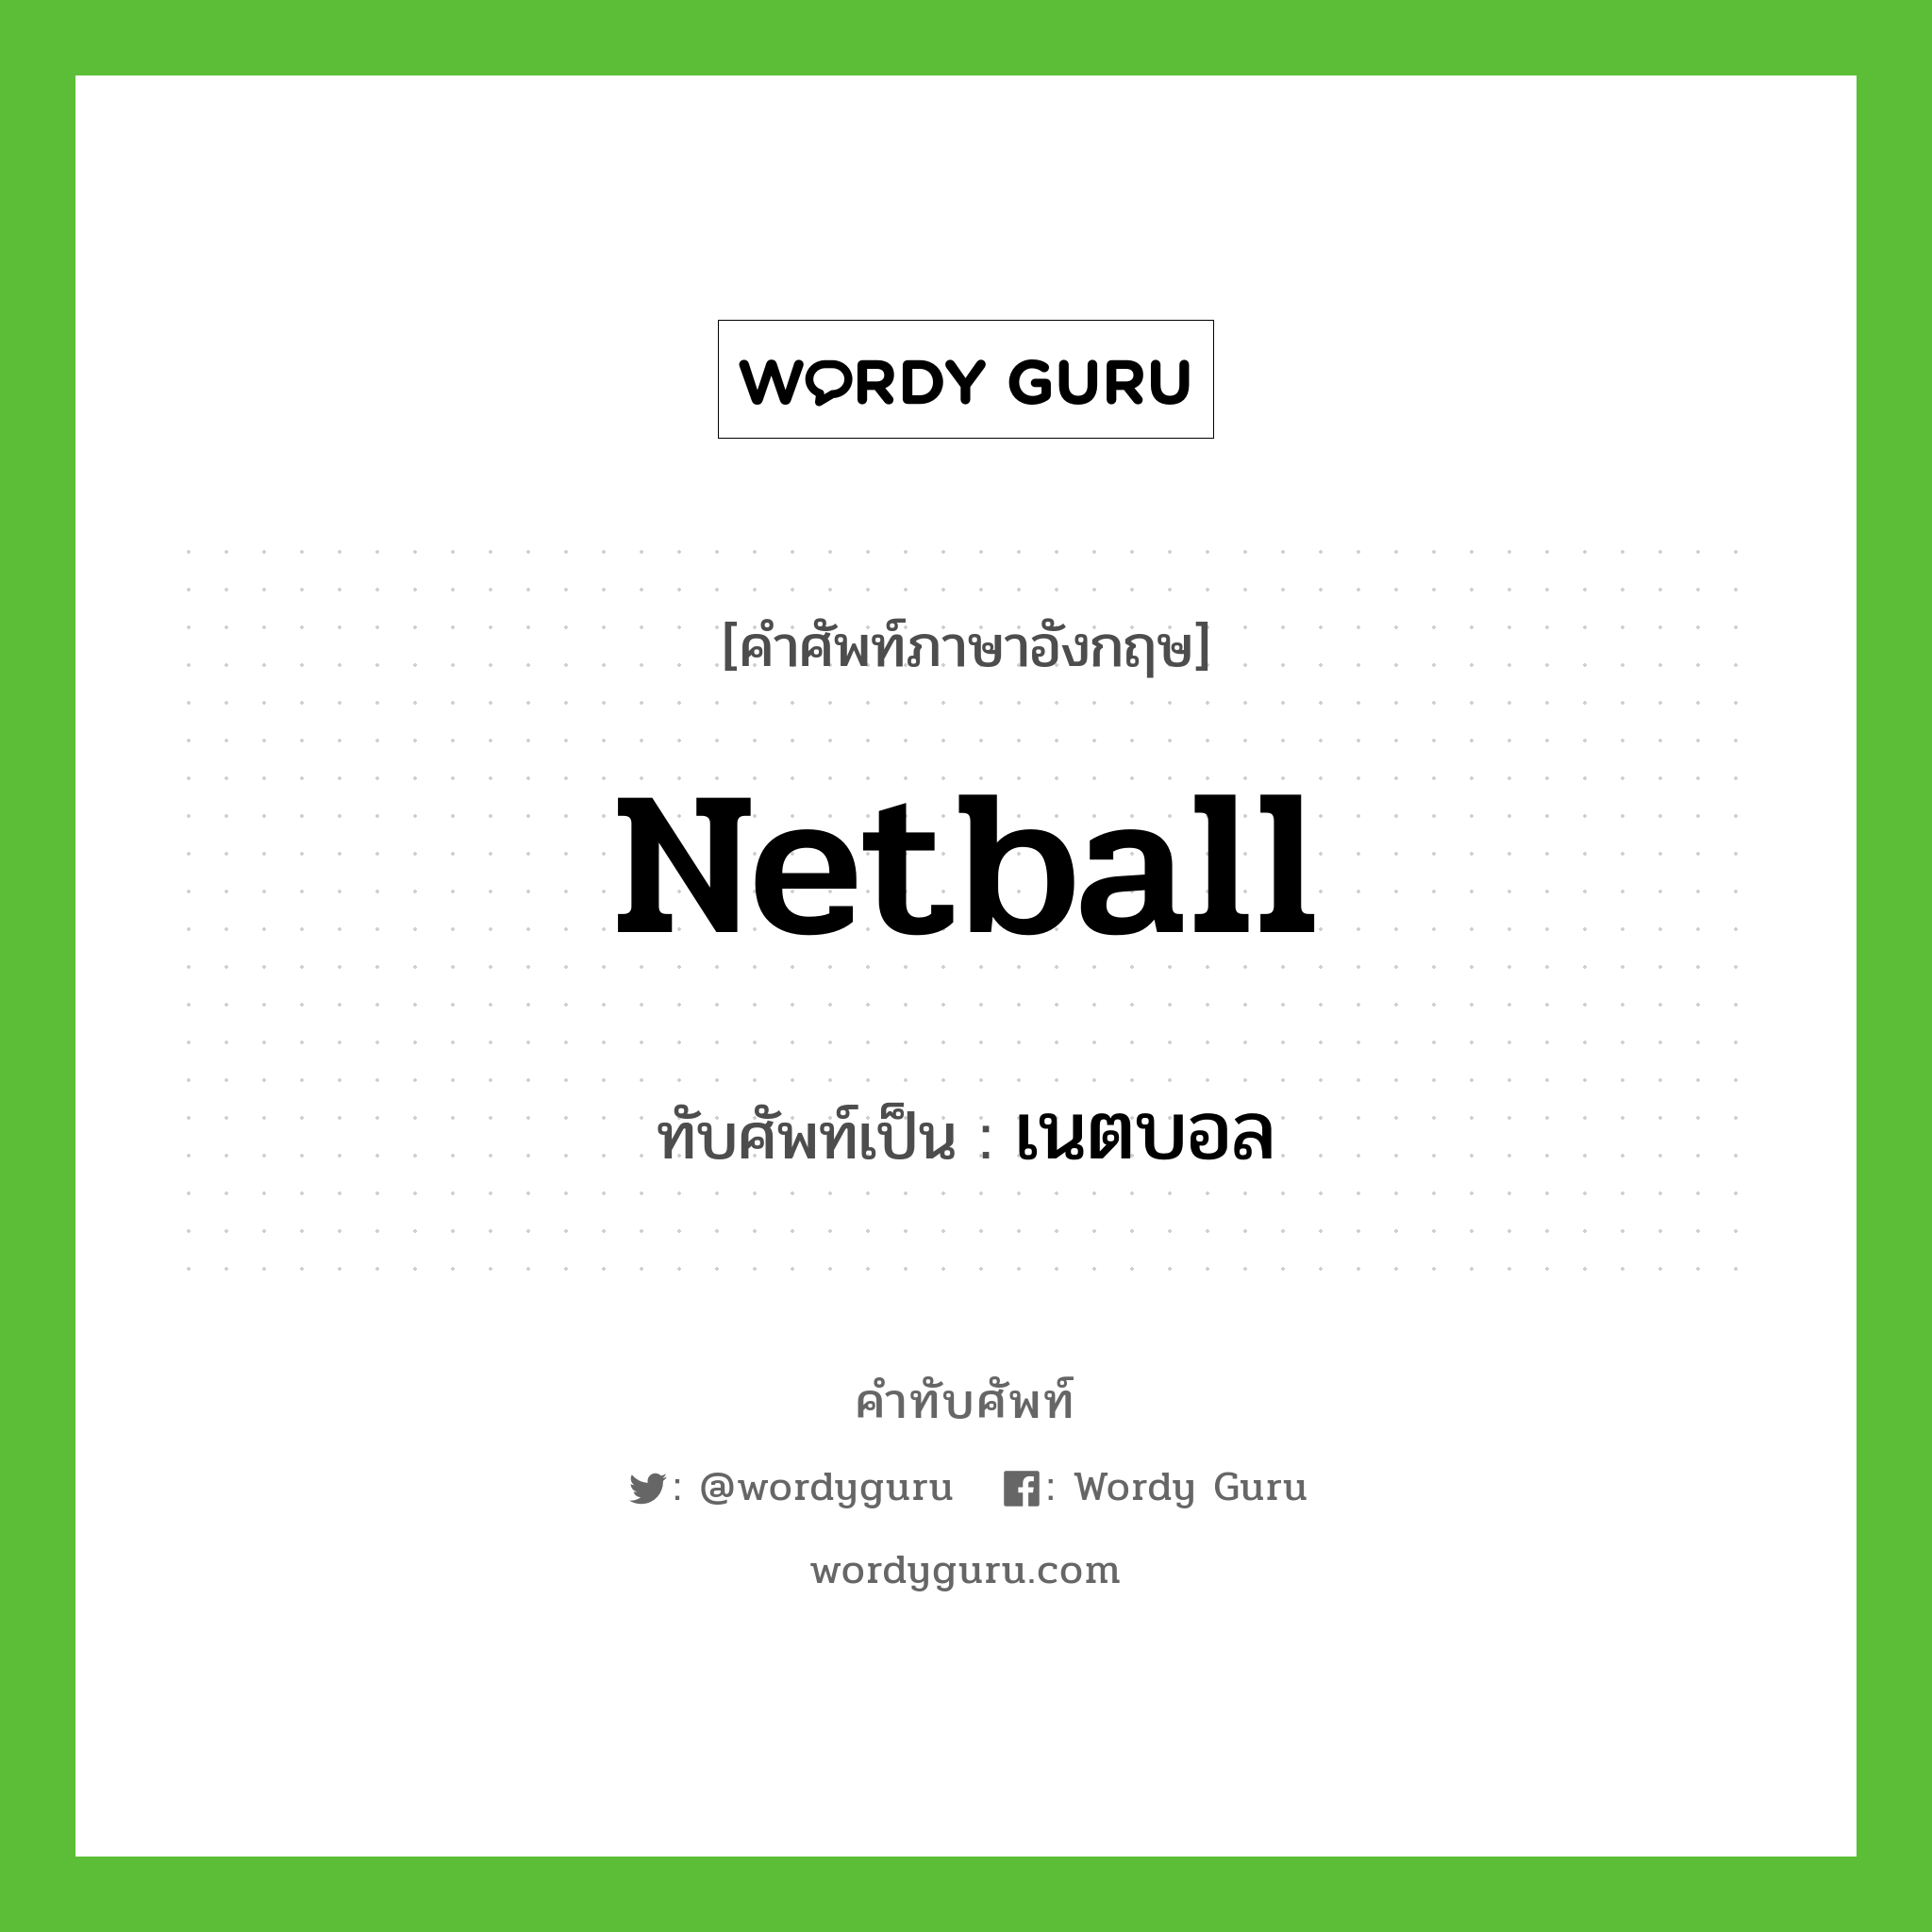 netball เขียนเป็นคำไทยว่าอะไร?, คำศัพท์ภาษาอังกฤษ netball ทับศัพท์เป็น เนตบอล